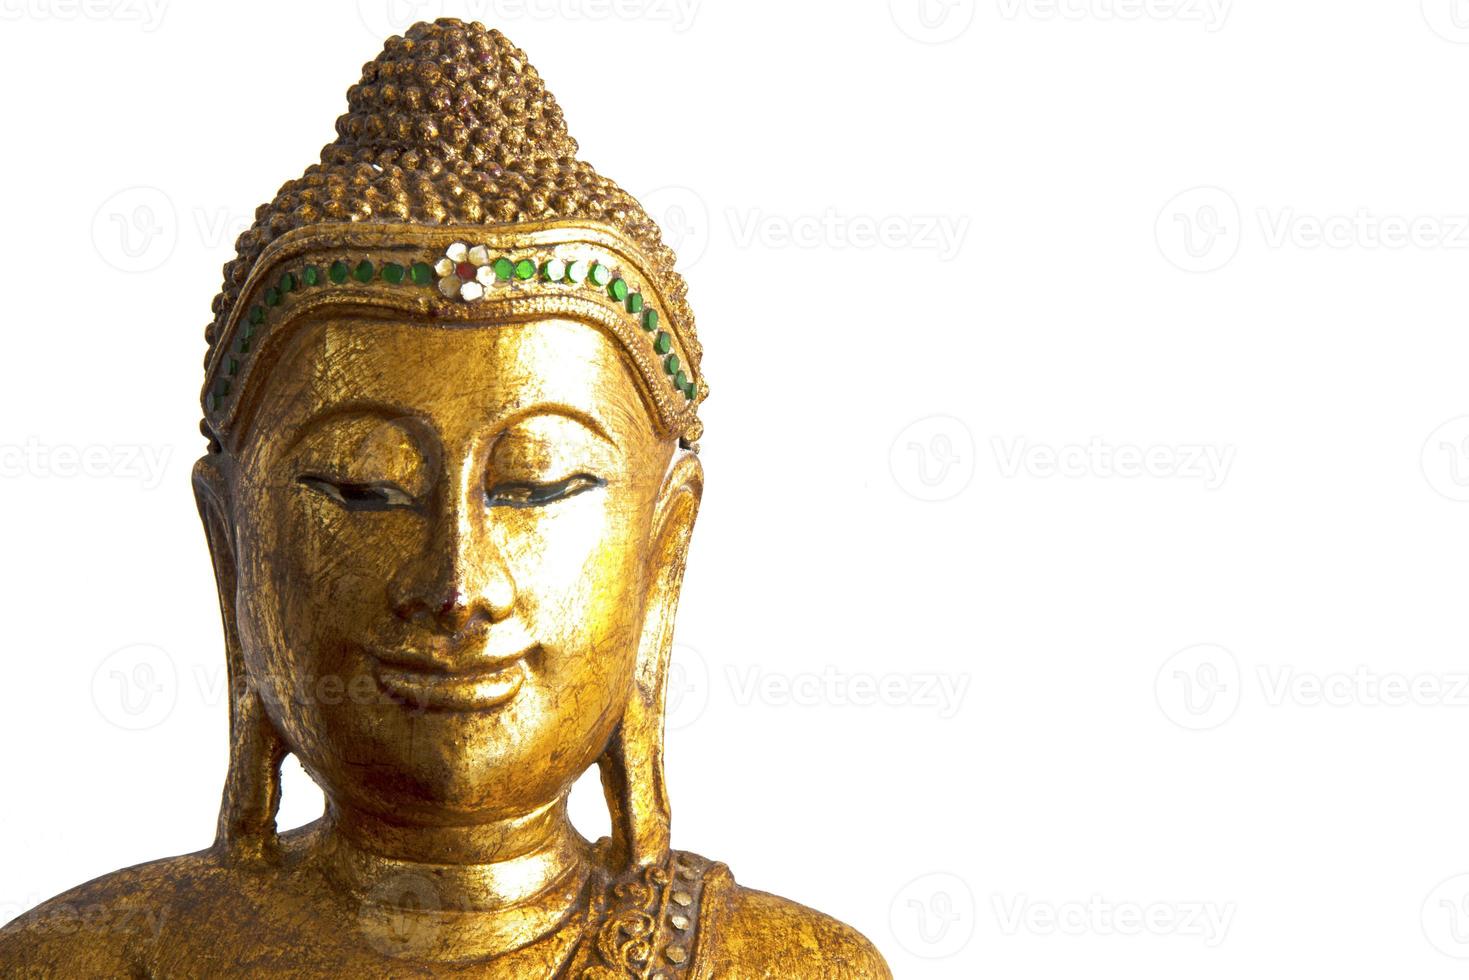 skulptur av buddha huvud foto